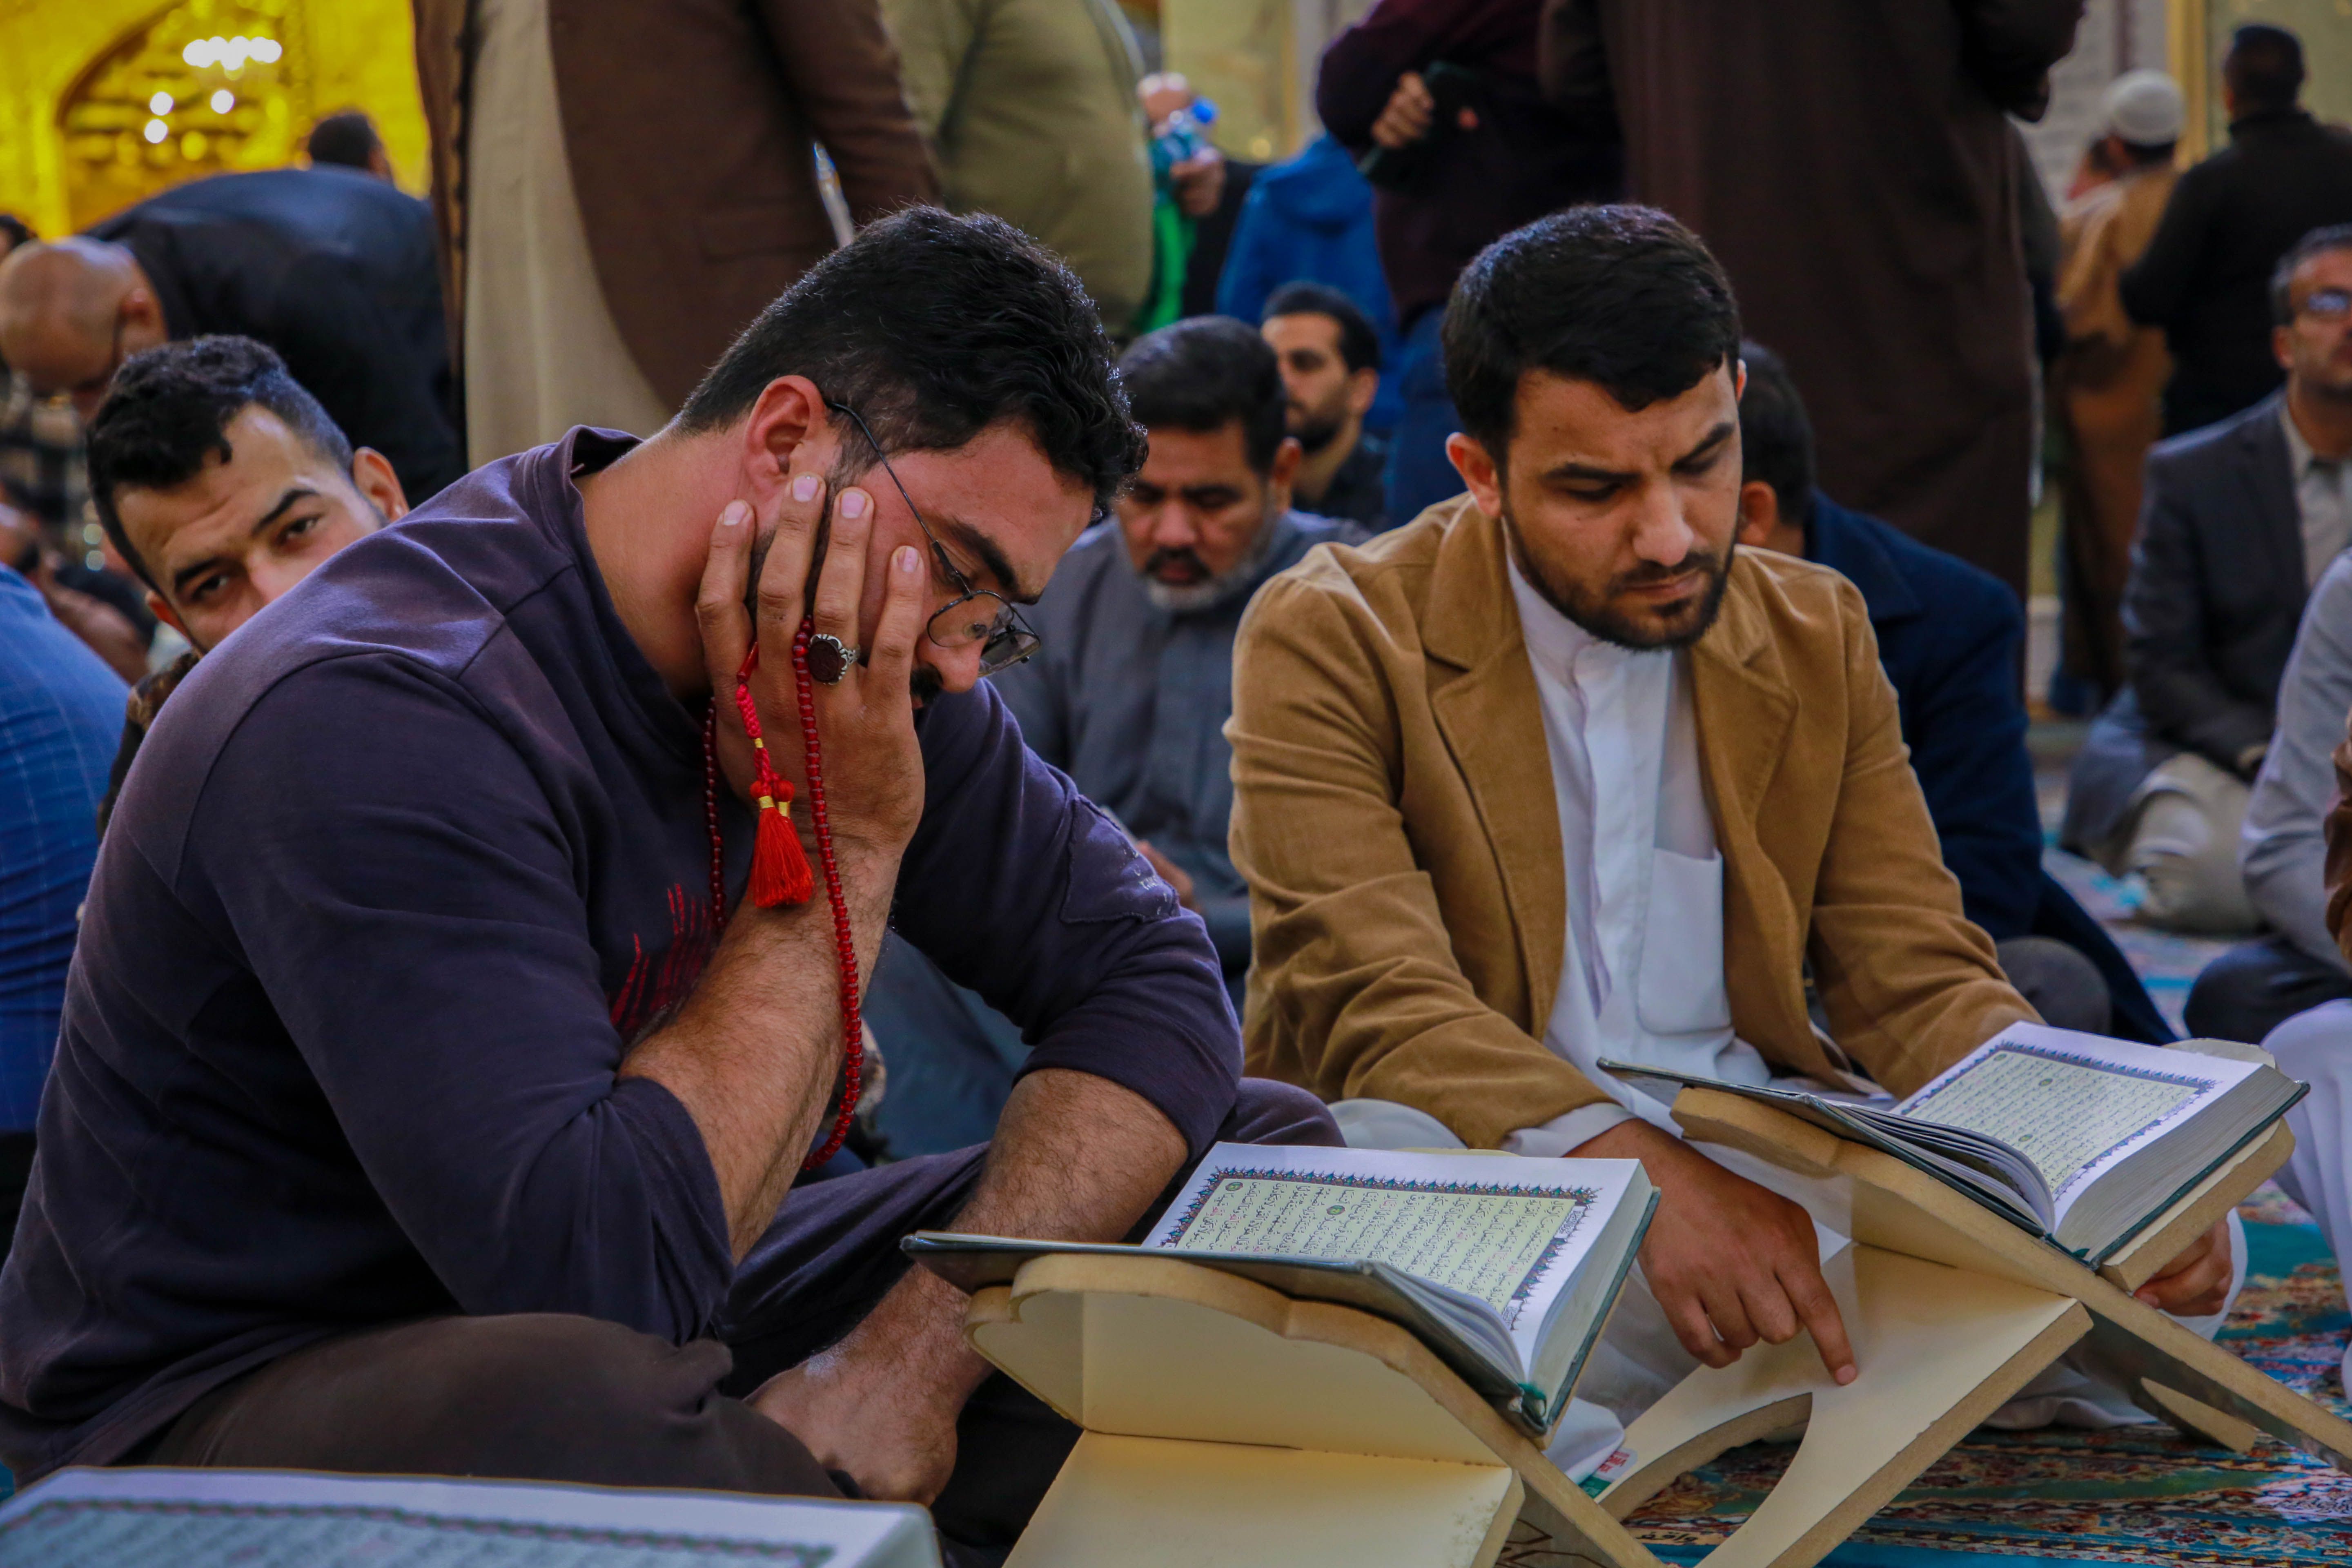 معهد القرآن الكريم والسادة الخدم يقيمان محفلًا تعليميًا في الصحن العباسيّ المطهّر